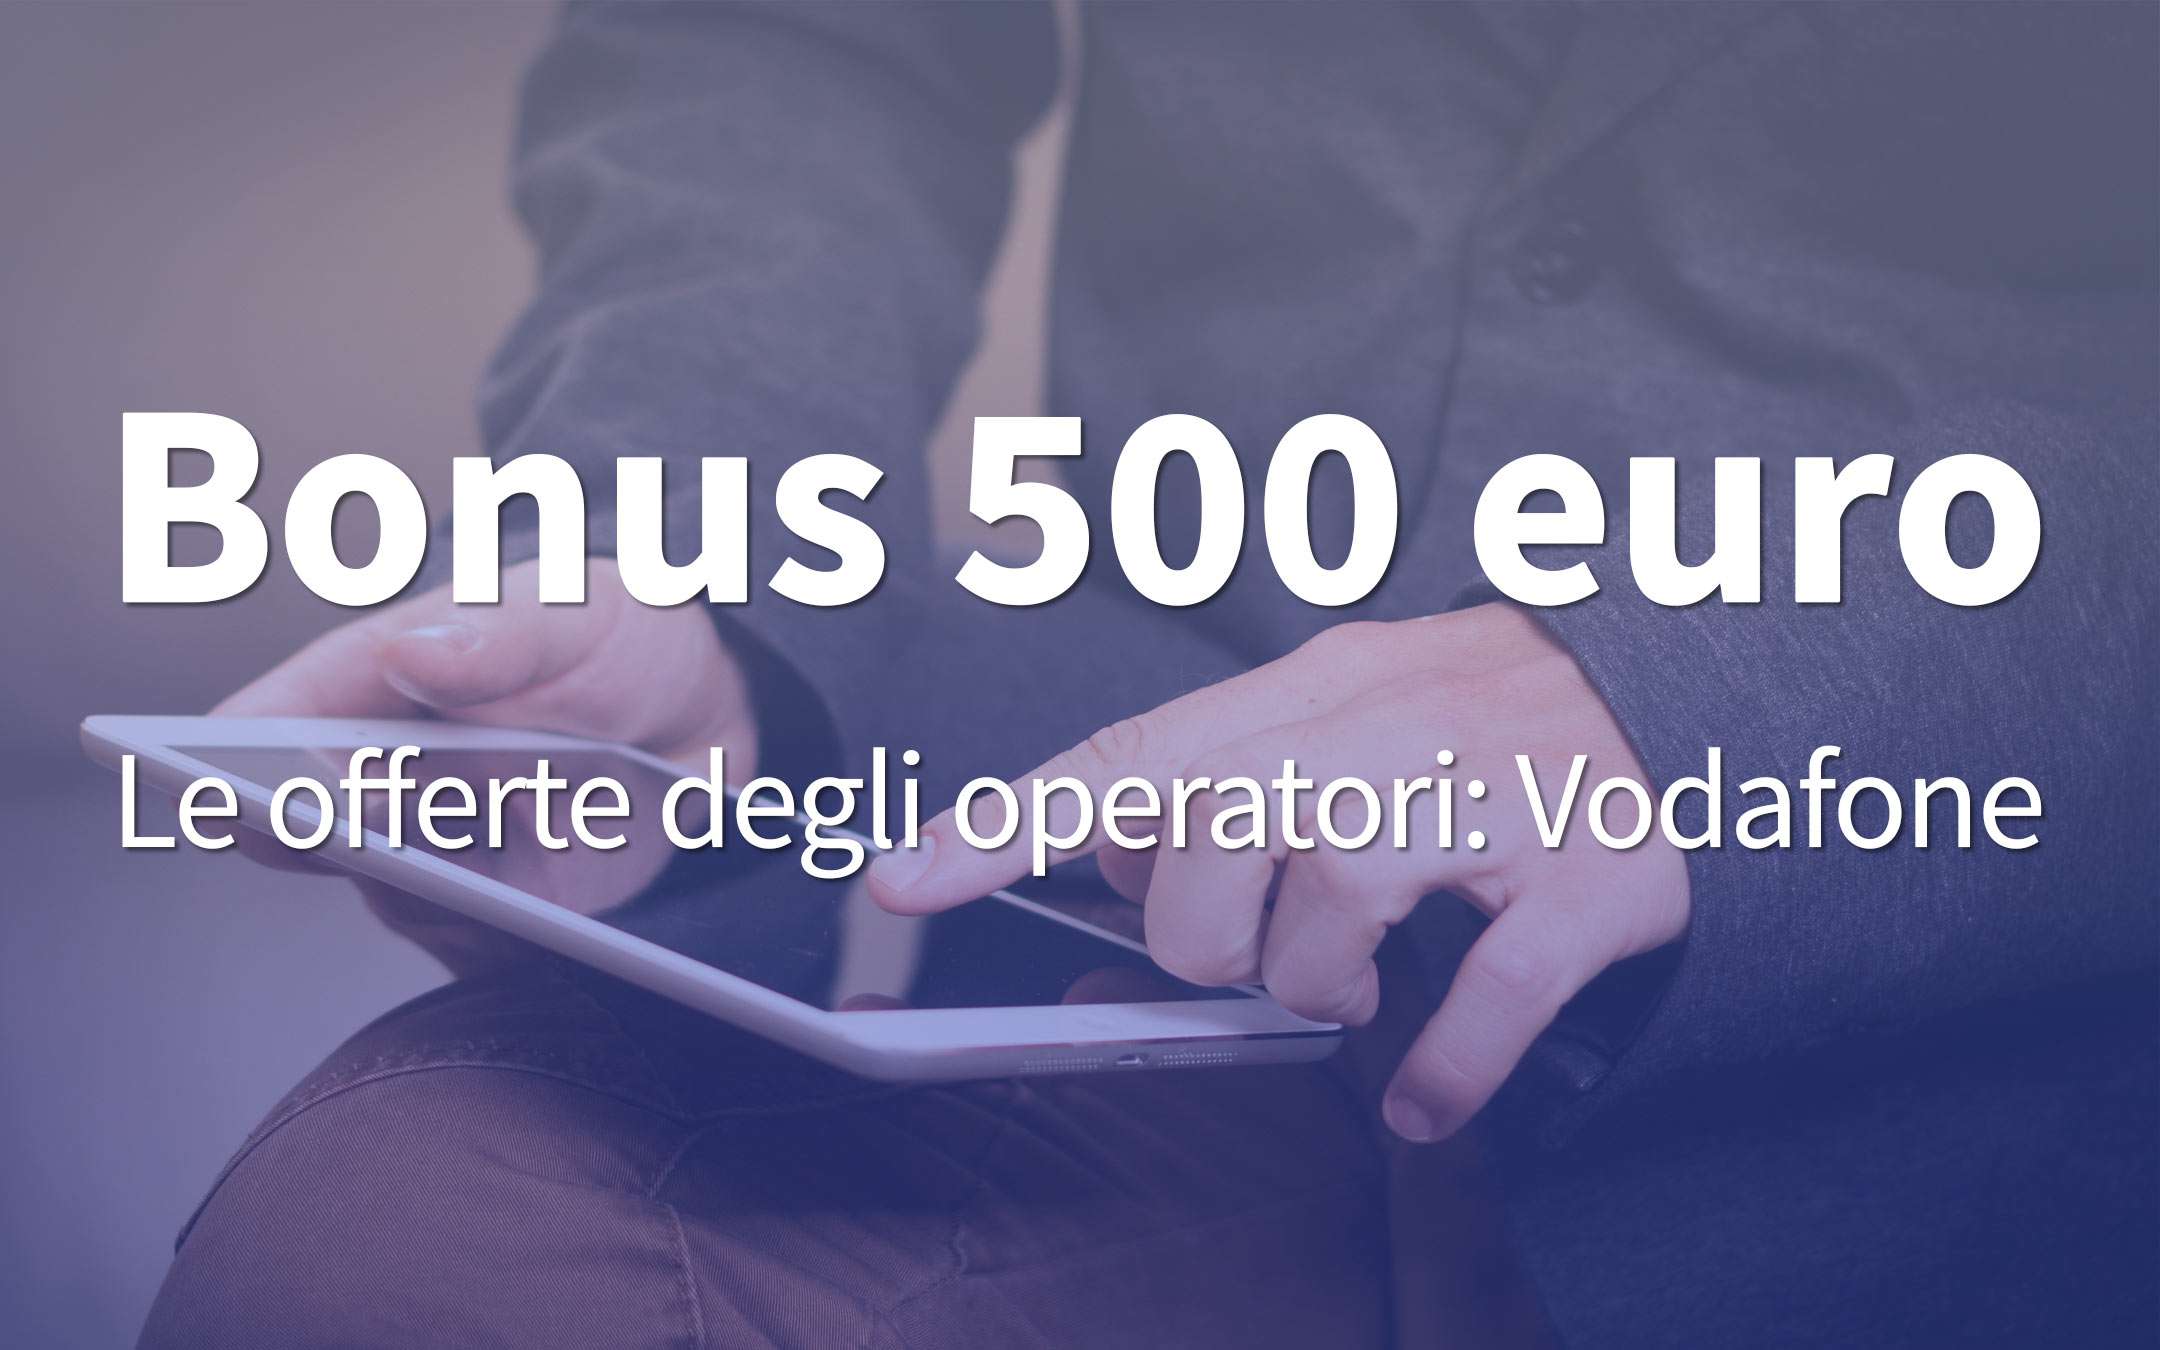 Bonus 500 euro: la pagina per l'offerta di Vodafone